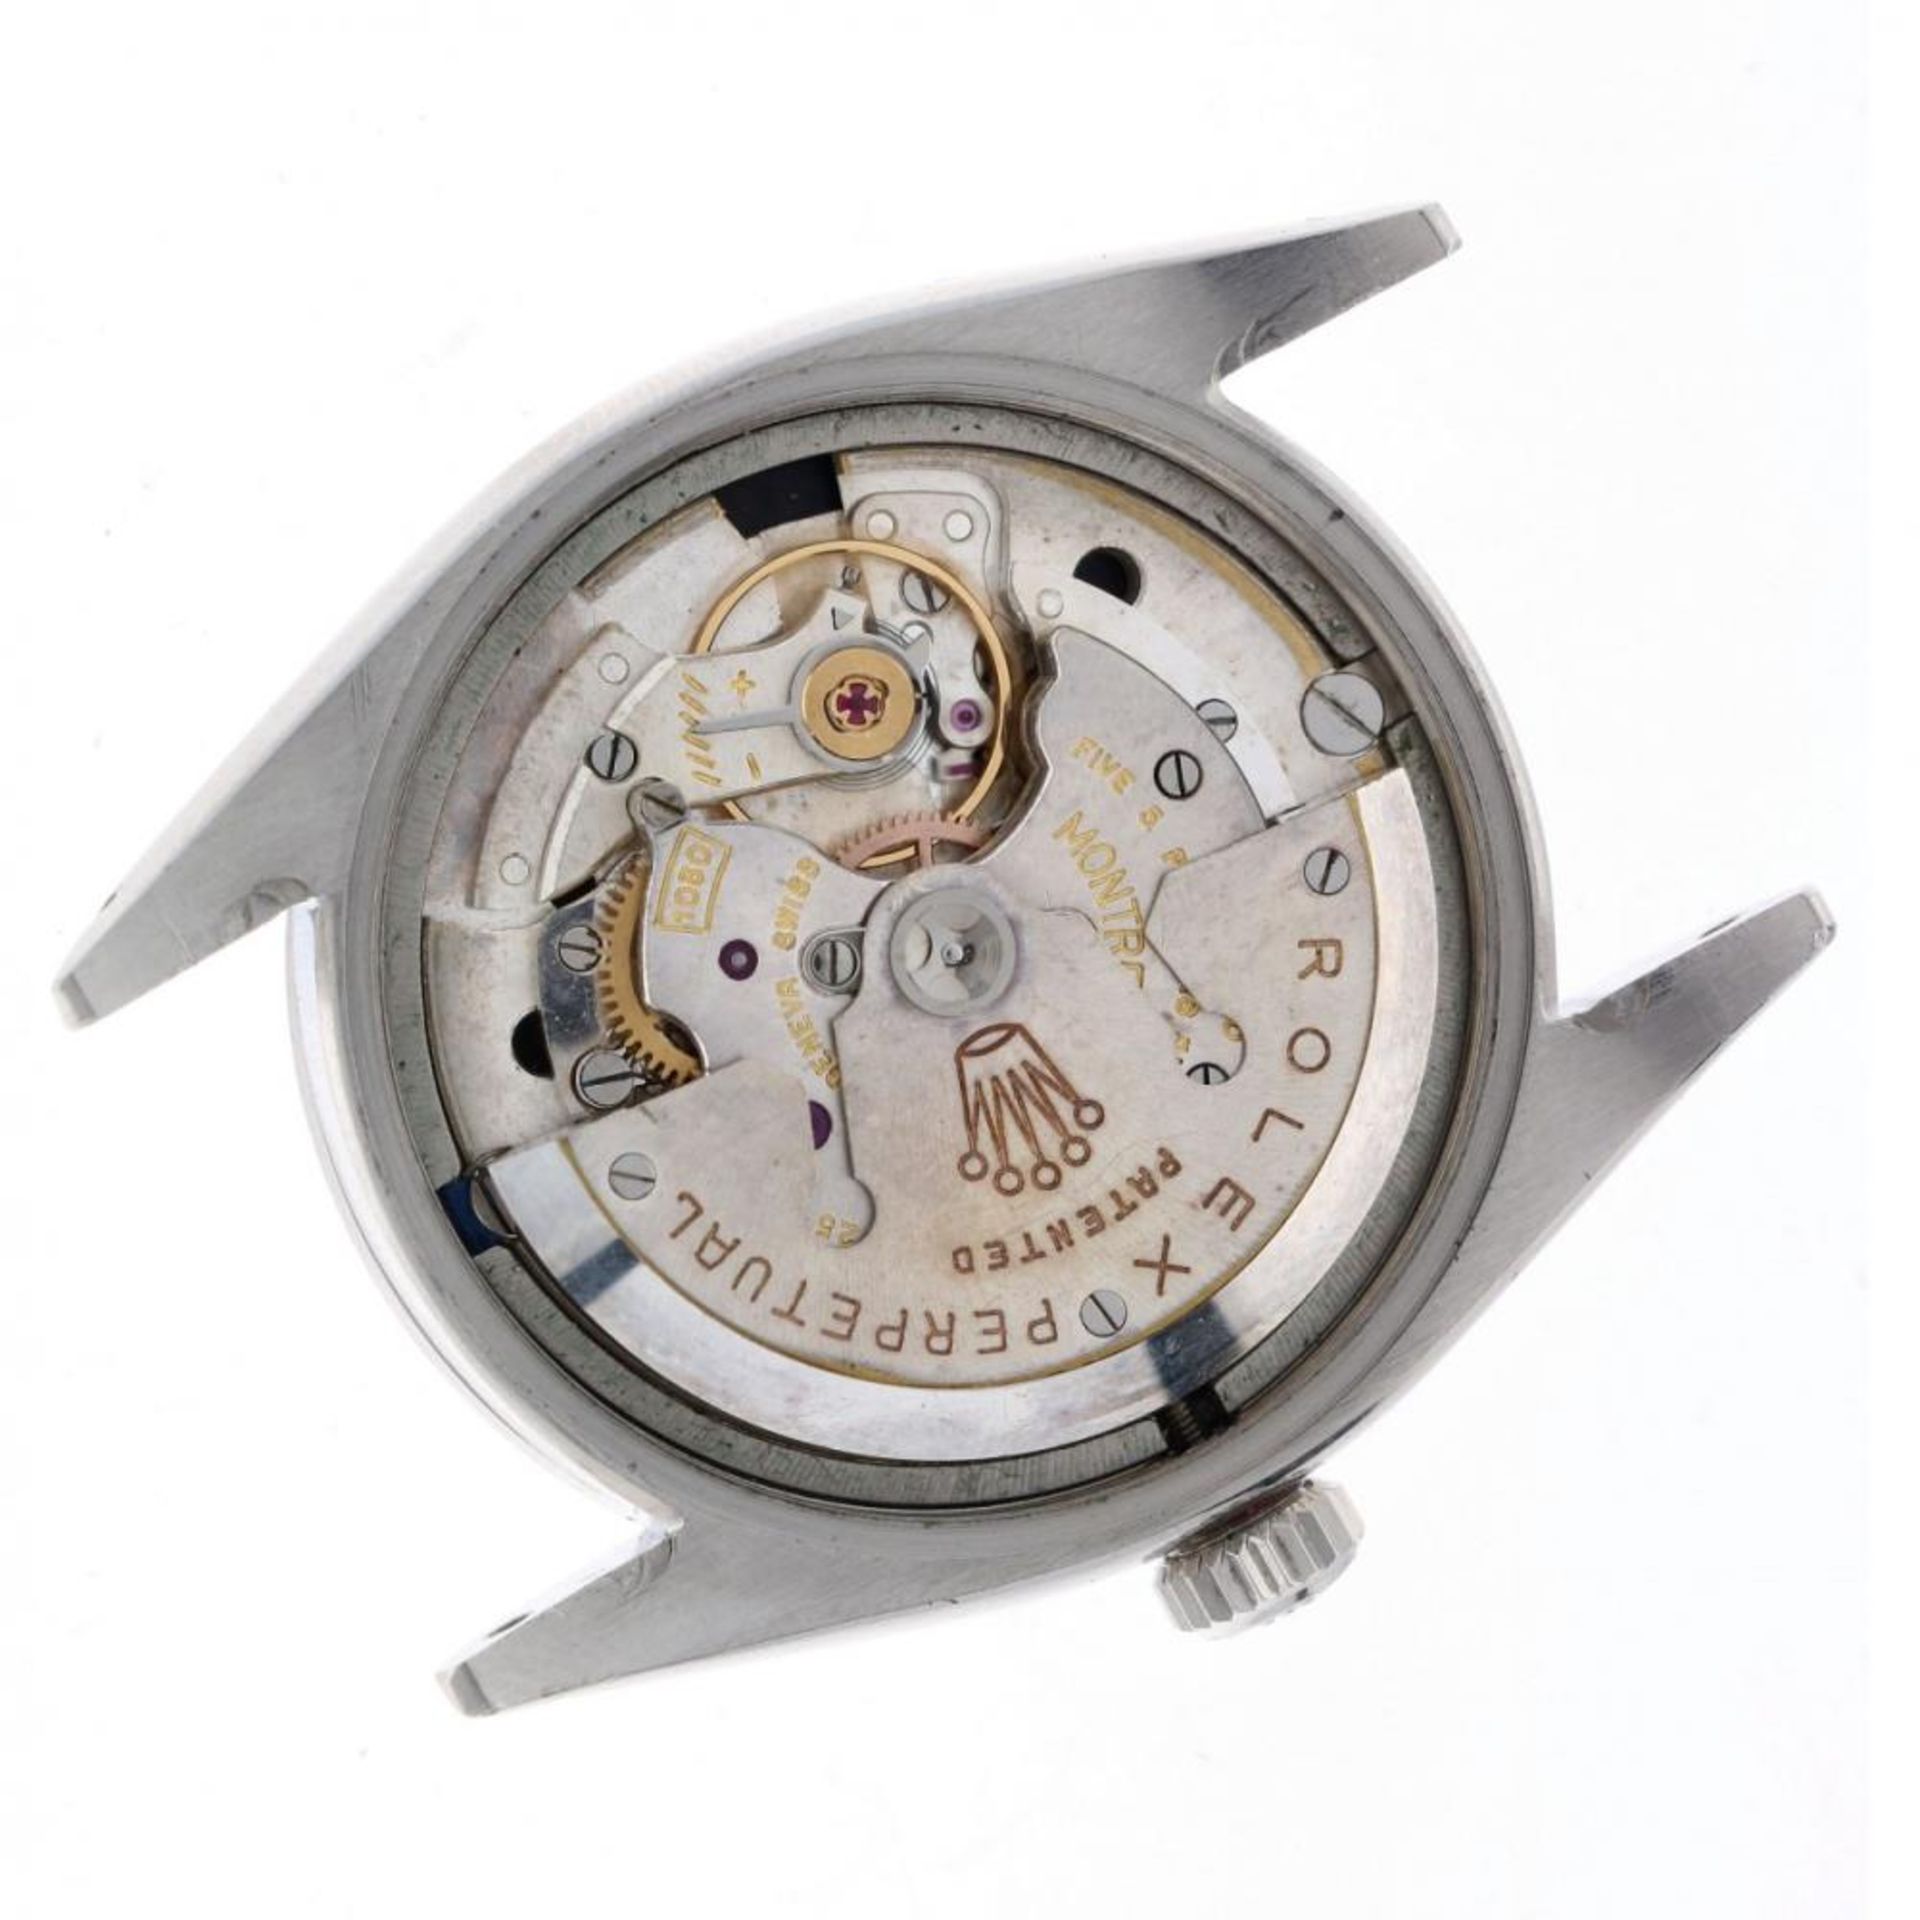 Rolex Explorer Red Depth Rating 6610 - Men's watch - 1956. - Image 8 of 10